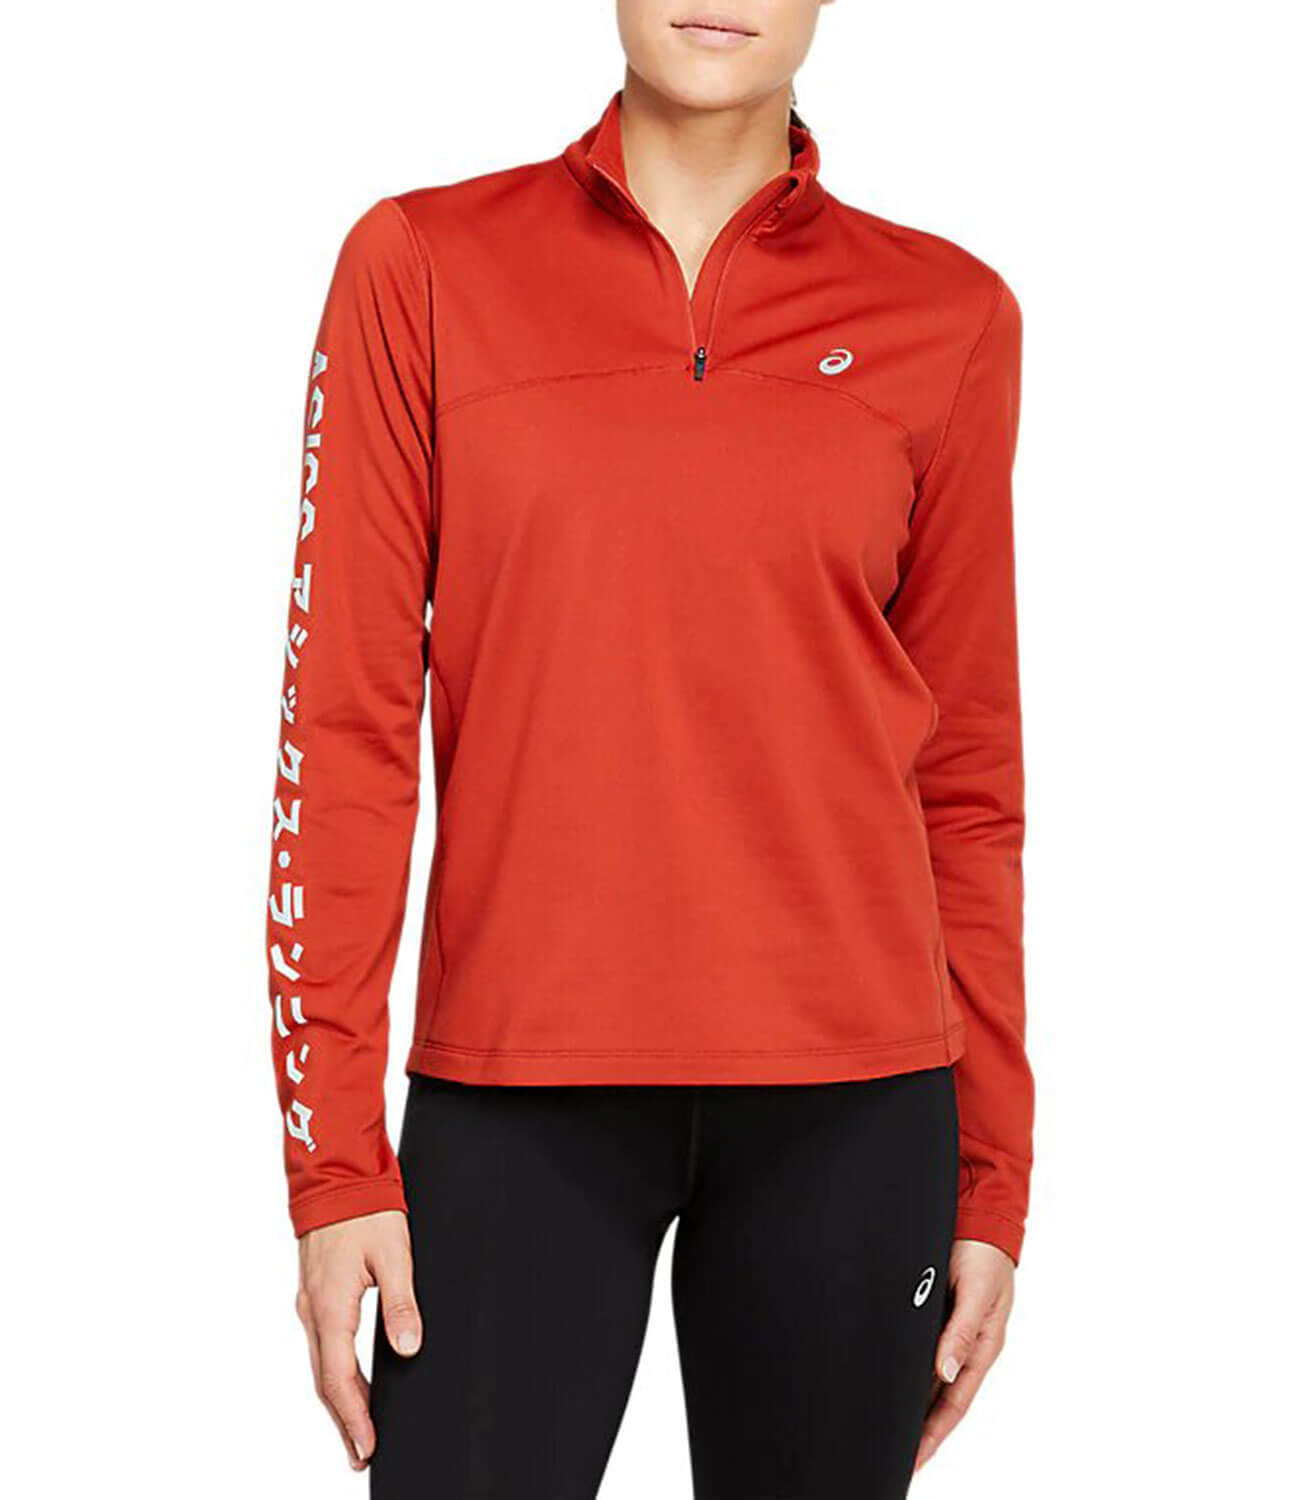 Женская беговая рубашка | Top Zip Интернет-магазин Katakana 2012B236 600 Five-sport Winter Asics 1/2